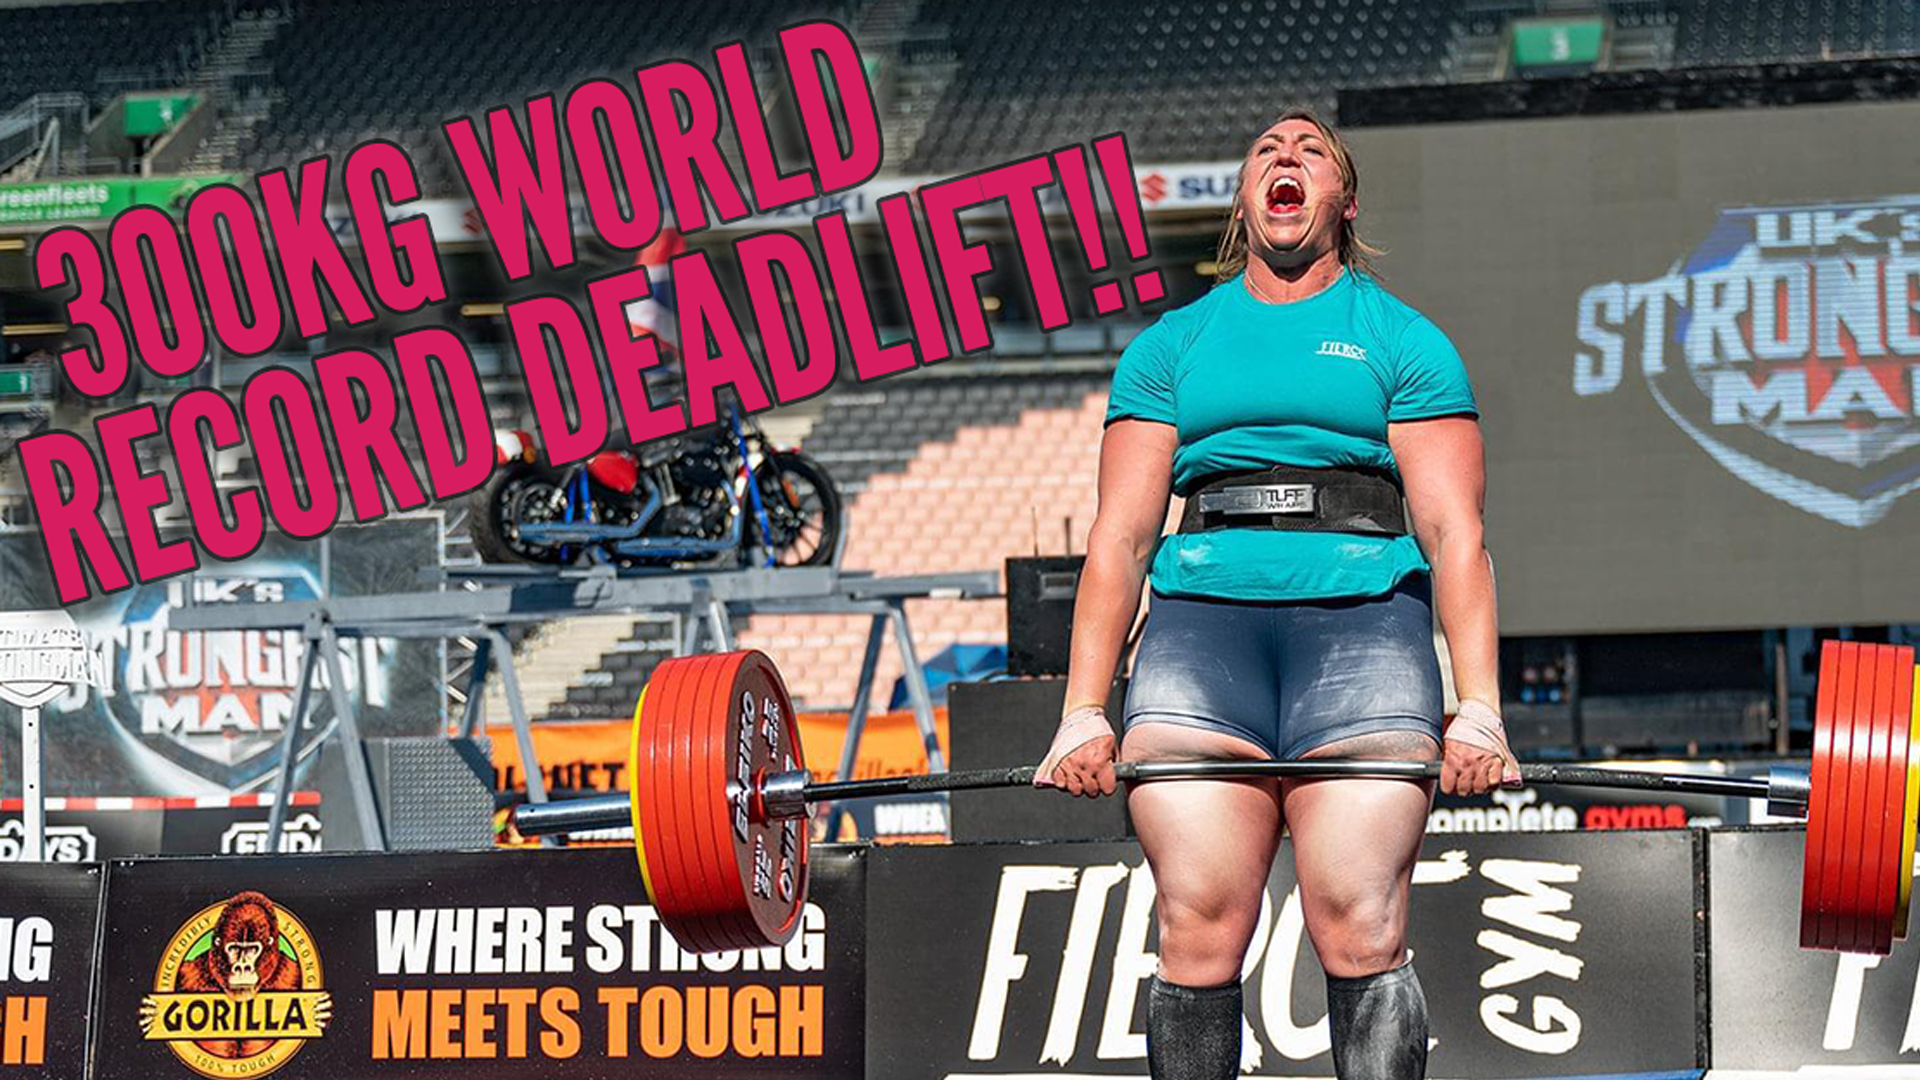 300kg World Record Women's Deadlift